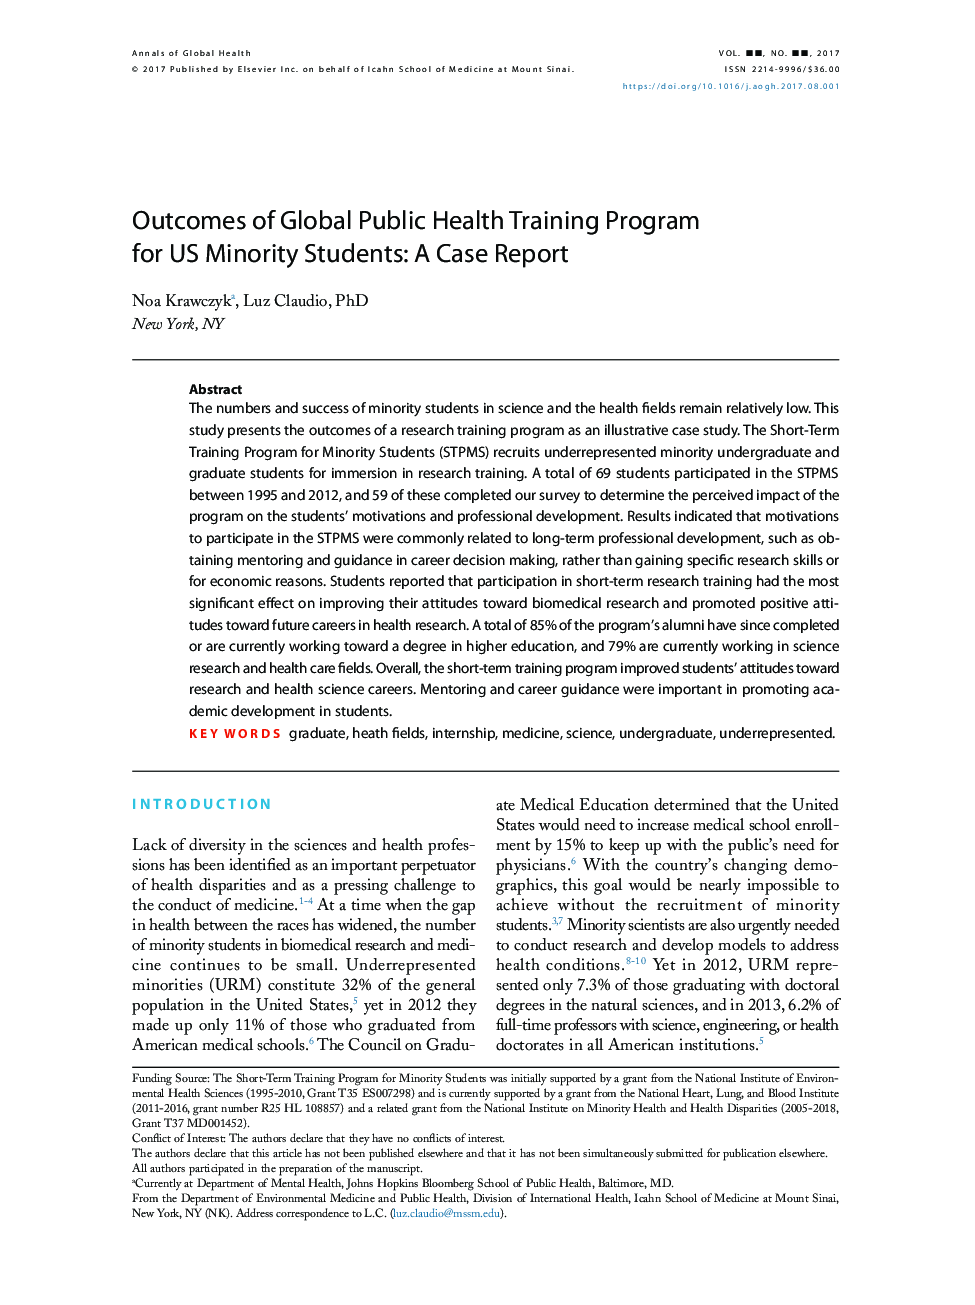 نتایج برنامه جهانی آموزش بهداشت عمومی برای دانش آموزان اقلیت های ایالات متحده: گزارش مورد 